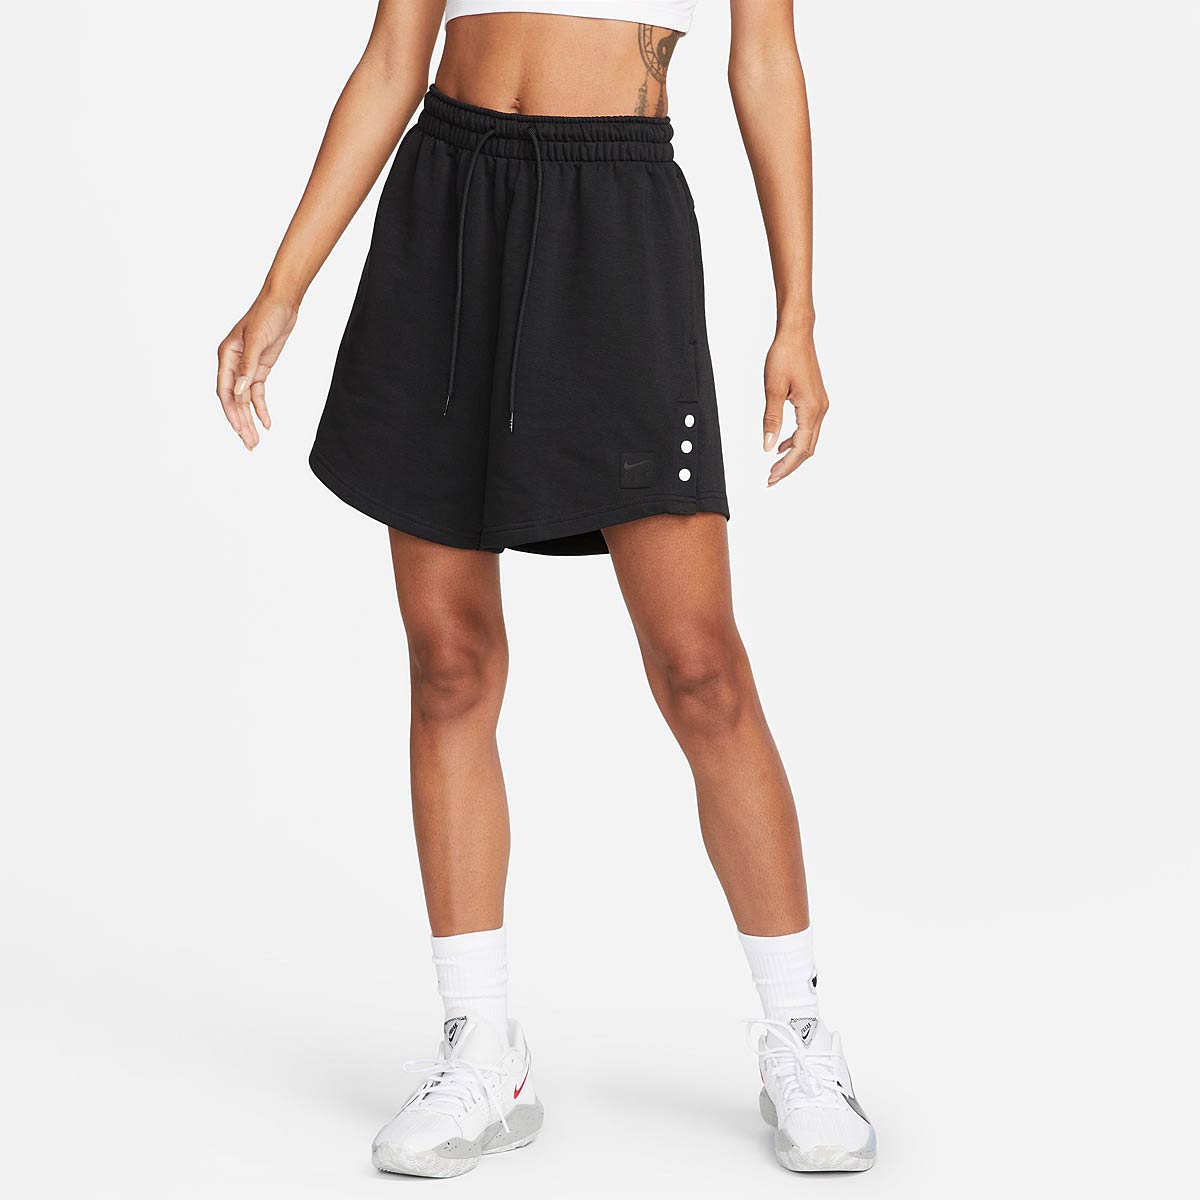 Nike Dri-Fit Prm Ssnl Short Womens, Black/White